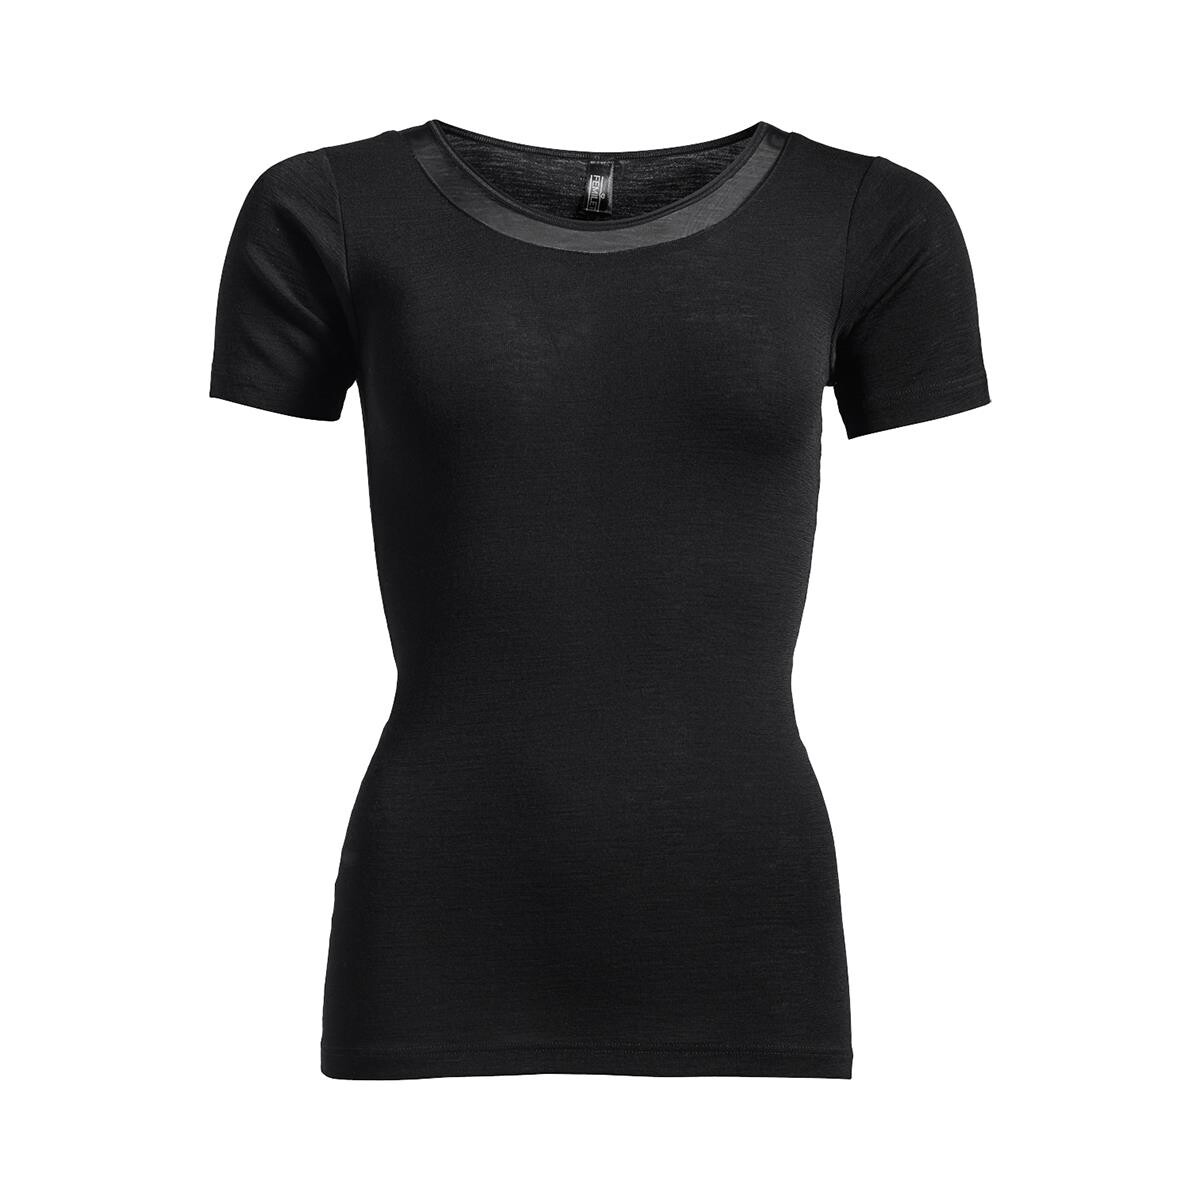 Femilet Juliana T-shirt Fn, Farve: Sort, Størrelse: 36, Dame